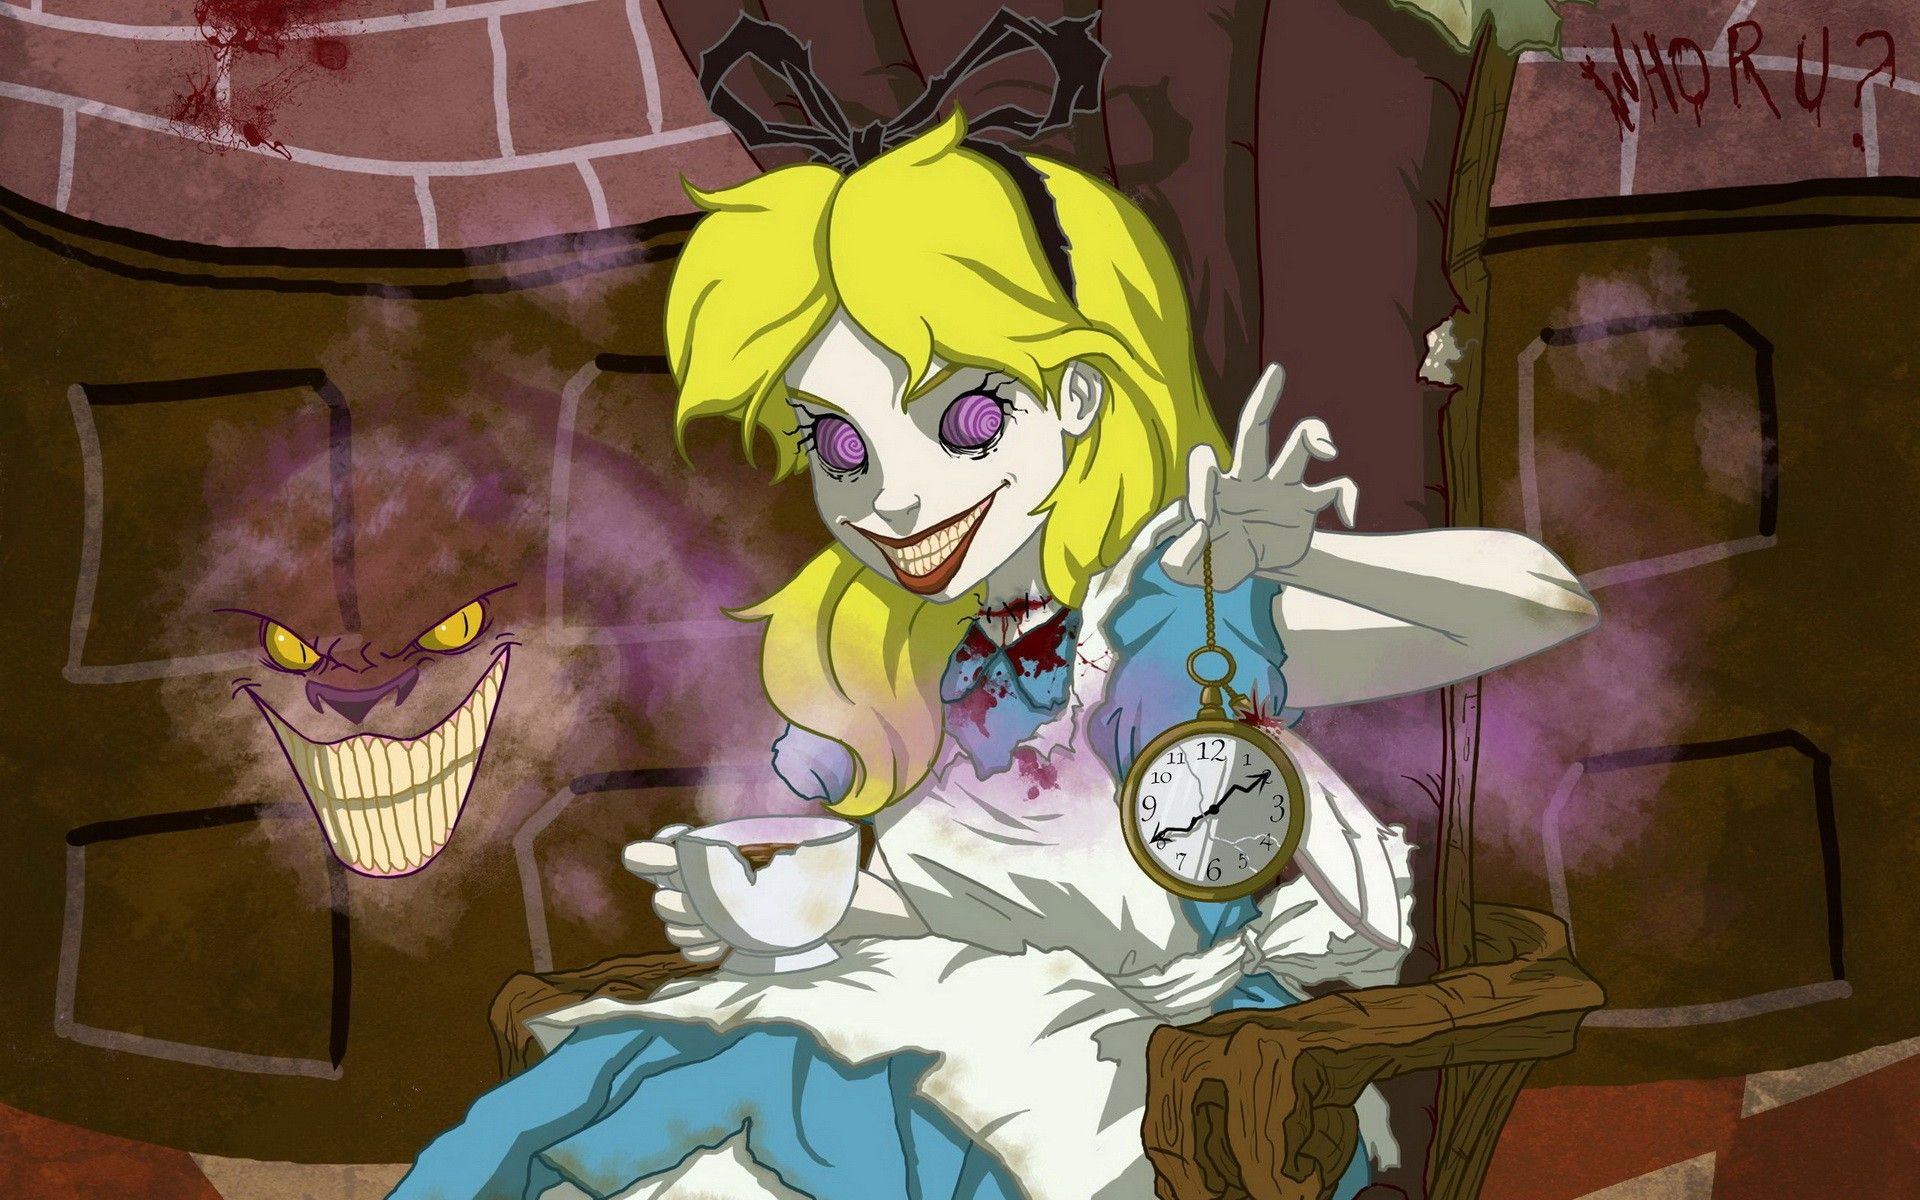 dark, Alice in Wonderland, twisted wallpaper